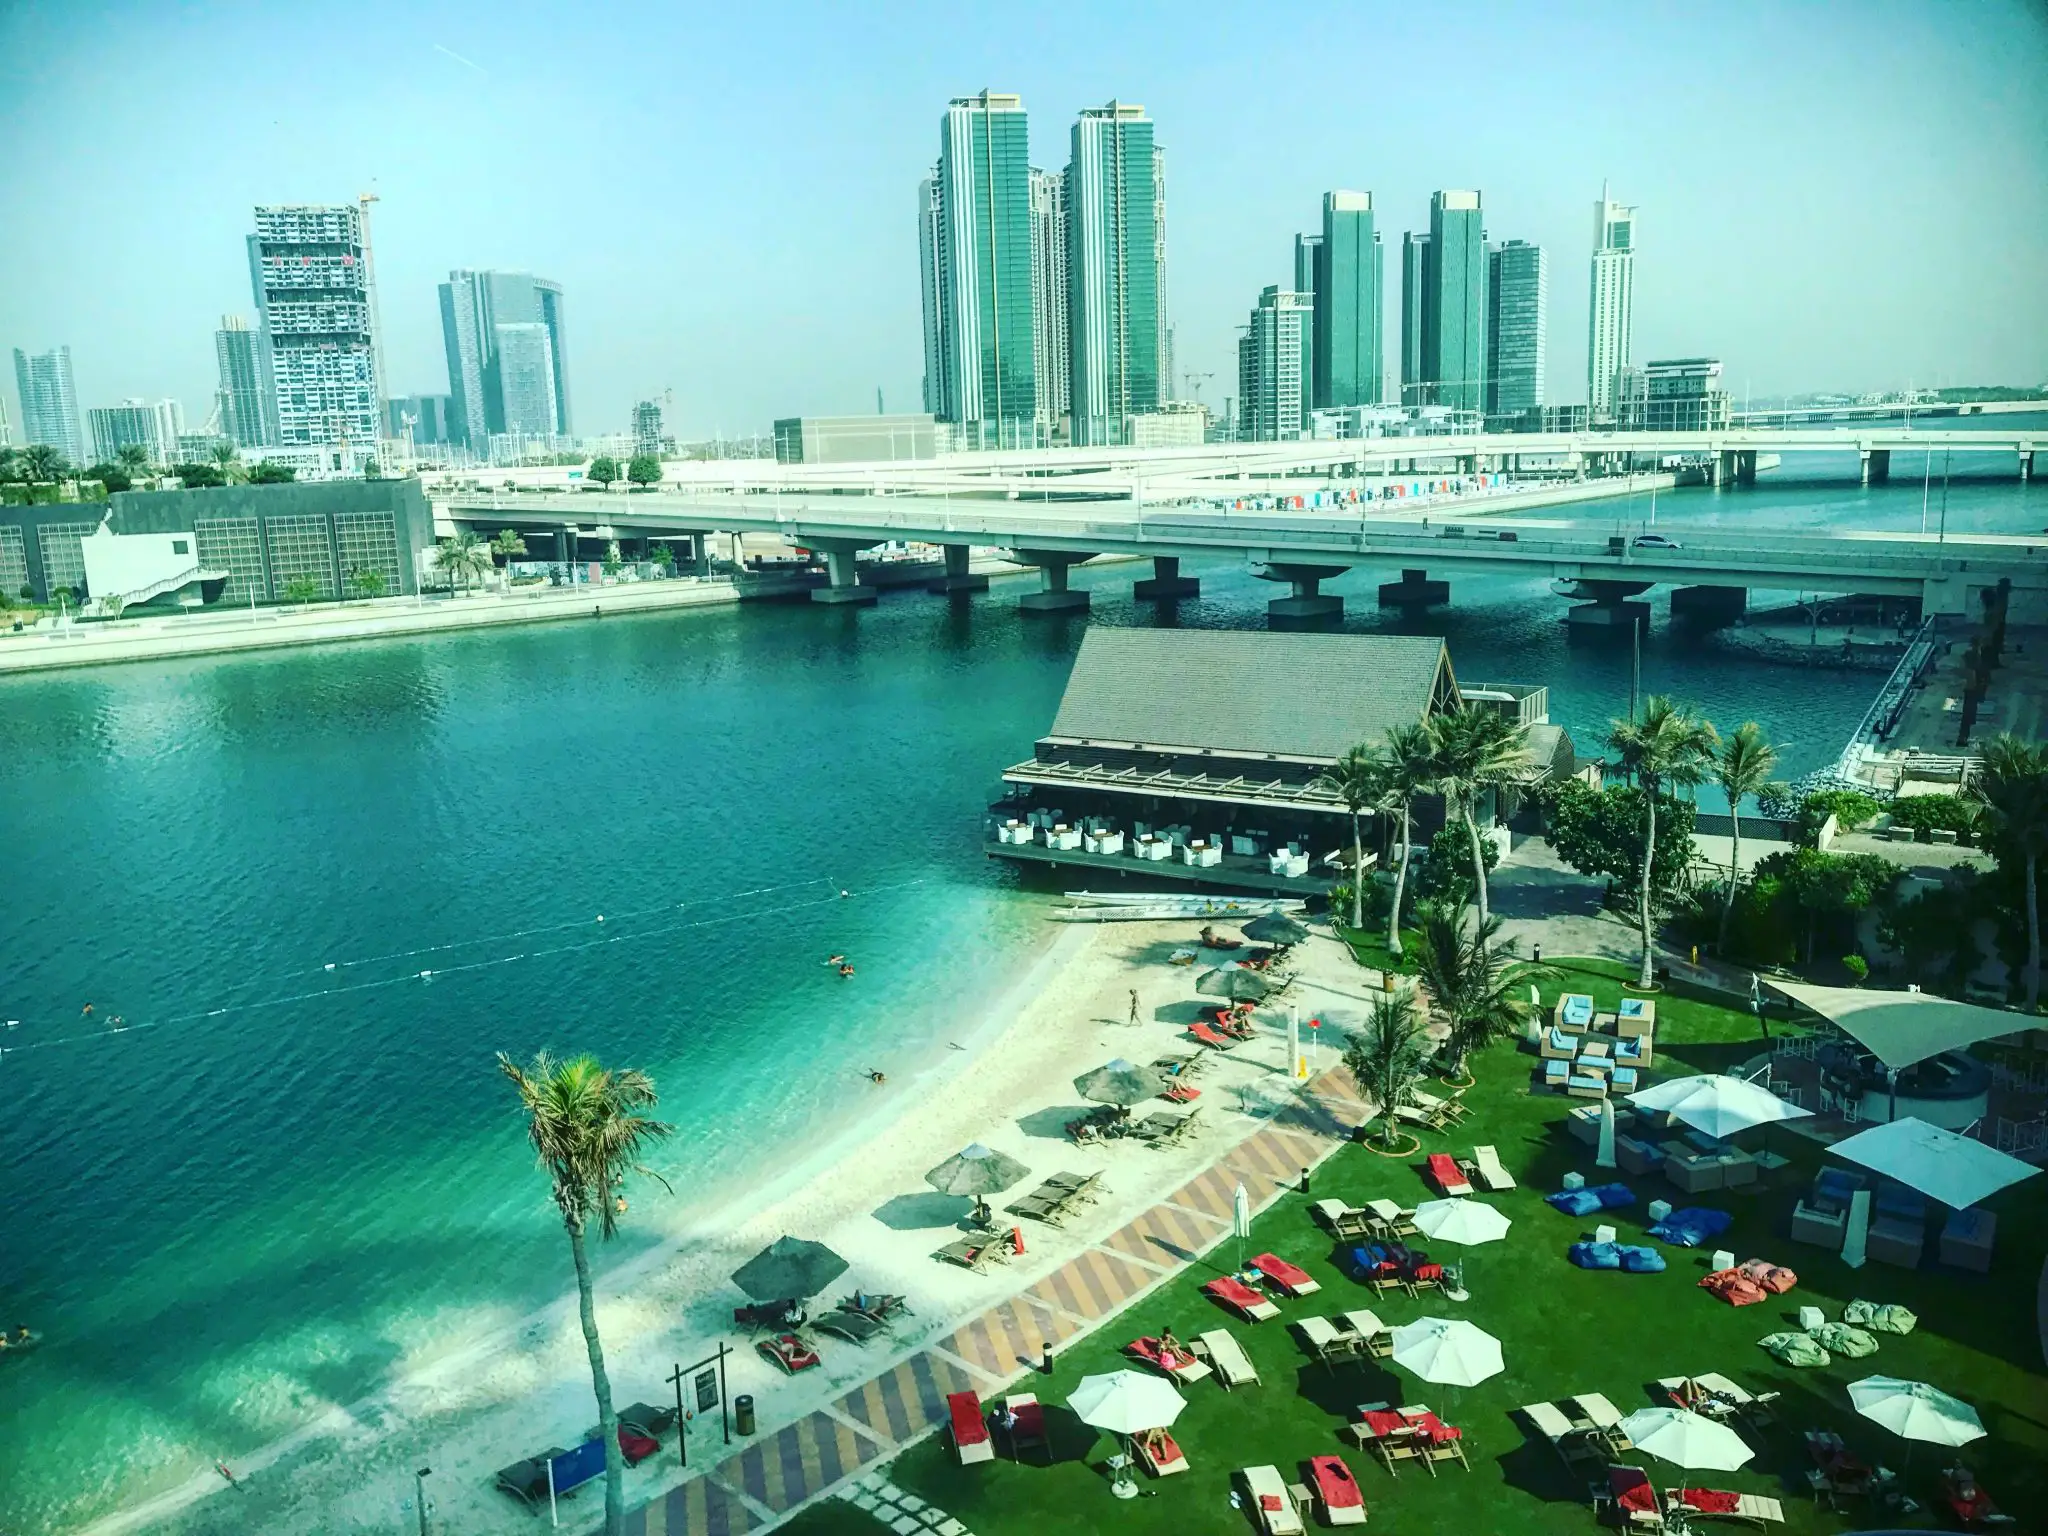 View from Abu Dhabi Mall, Abu Dhabi, UAE